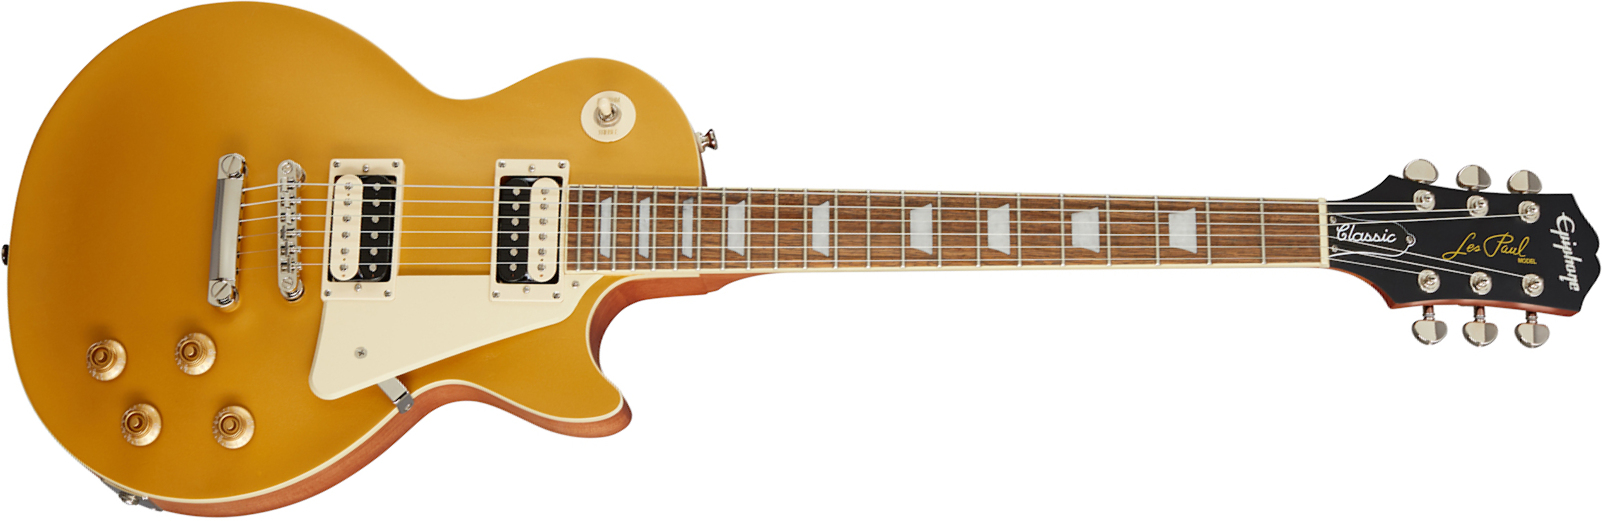 Epiphone Les Paul Classic Worn 2020 Hh Ht Rw - Worn Metallic Gold - Guitare Électrique Single Cut - Main picture